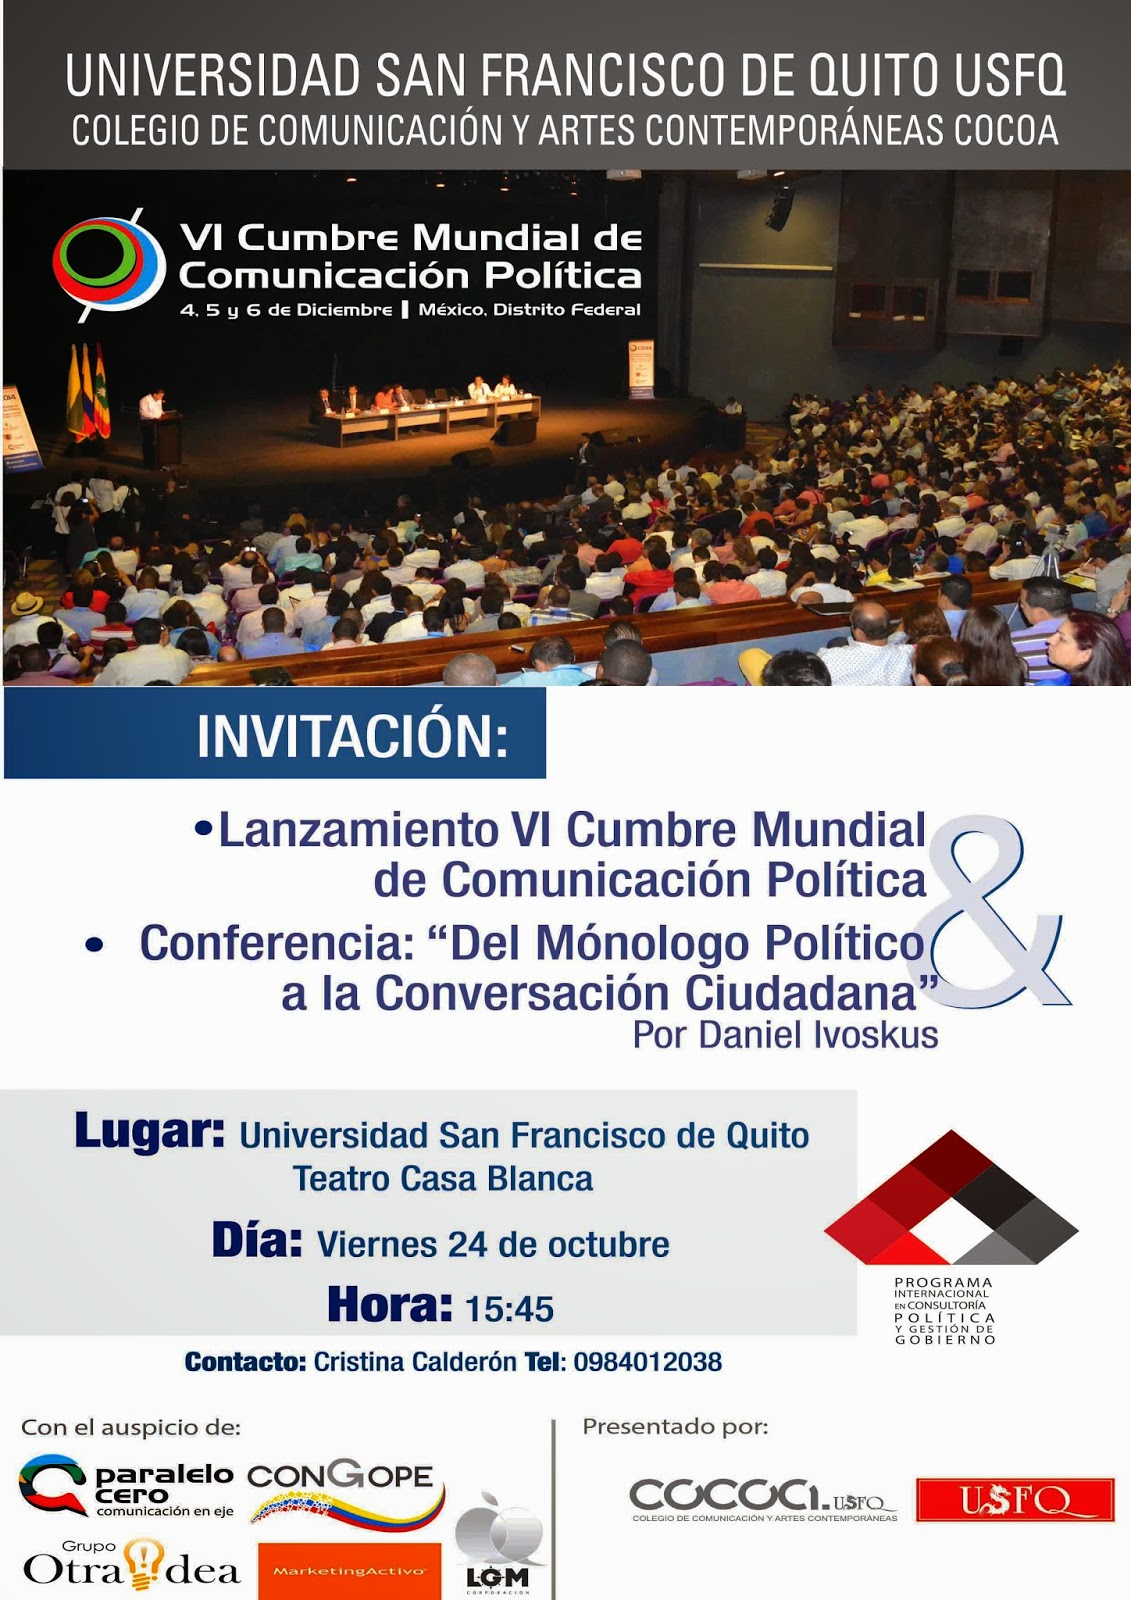 Lanzamiento de la VI Cumbre Mundial de Comunicación Política. 24 octubre, 15h45, Teatro Casa Blanca USFQ